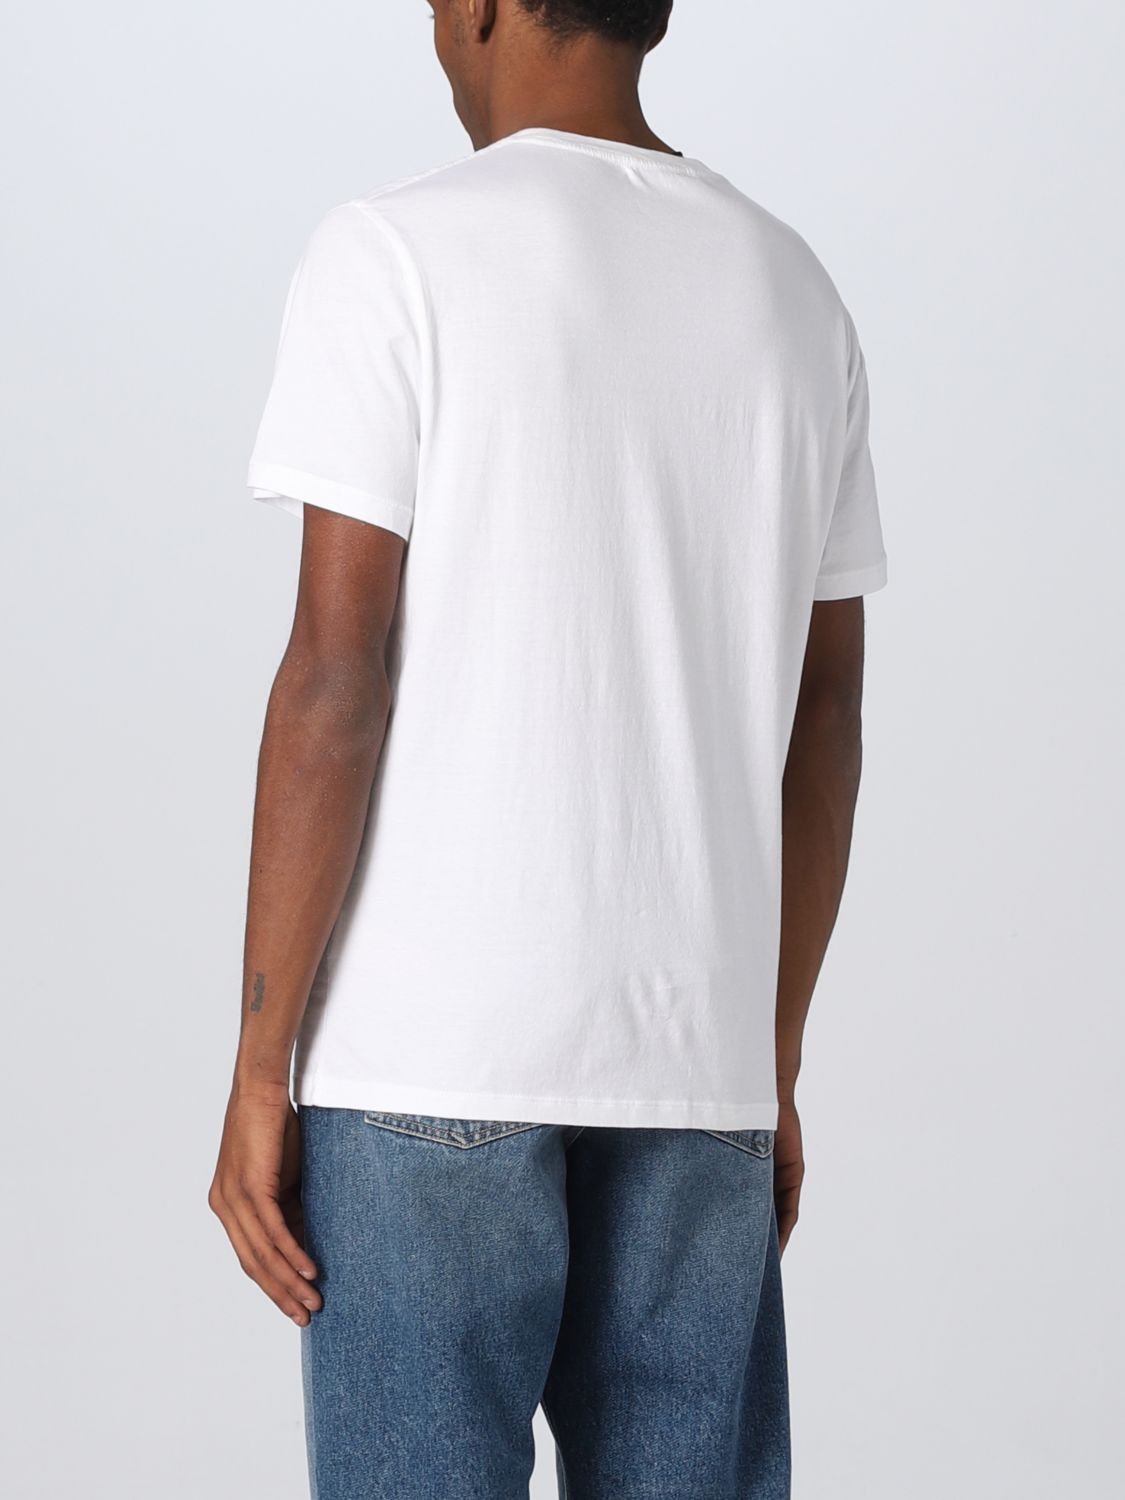 T-shirt Zadig & Voltaire: Zadig & Voltaire t-shirt for man white 2